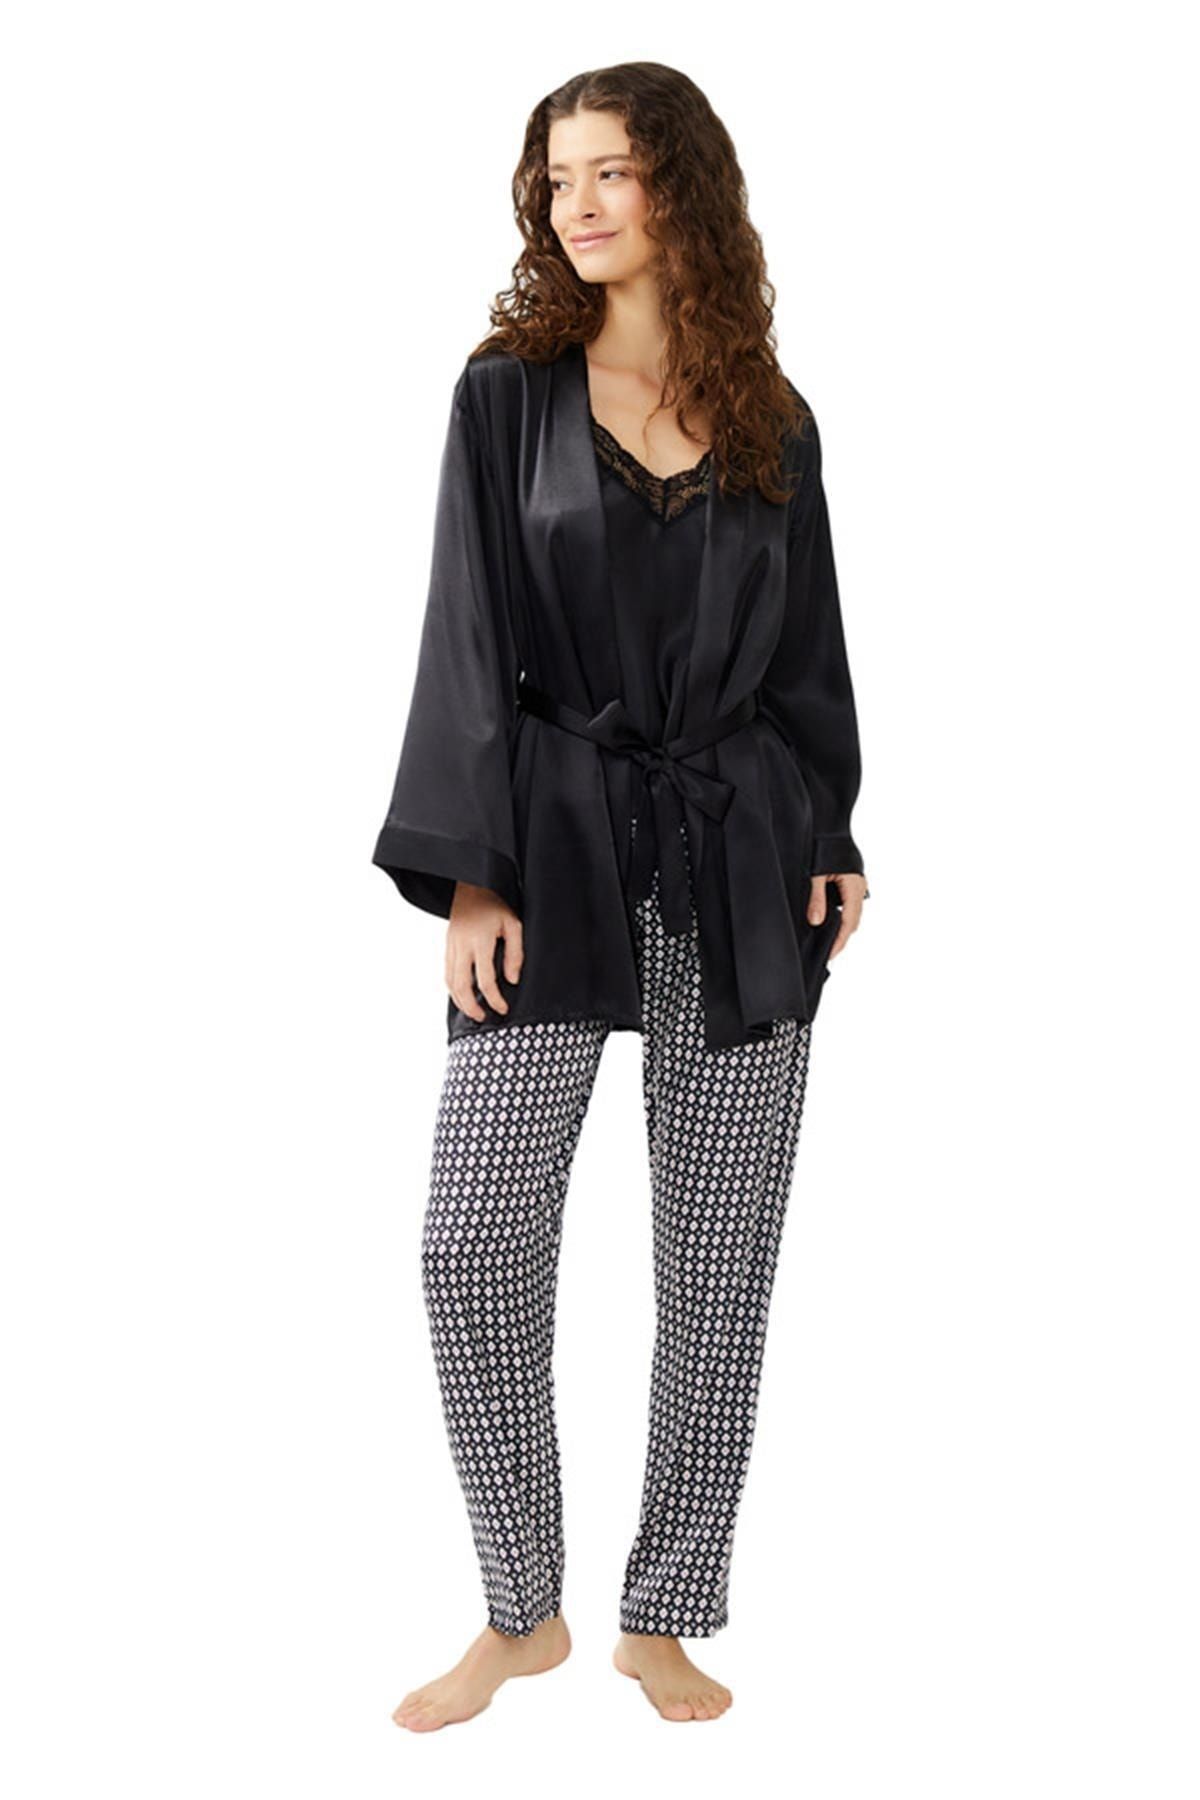 Cottonhill Siyah Dantel Detaylı Desenli Saten Pijama Takımı 3'lü Set